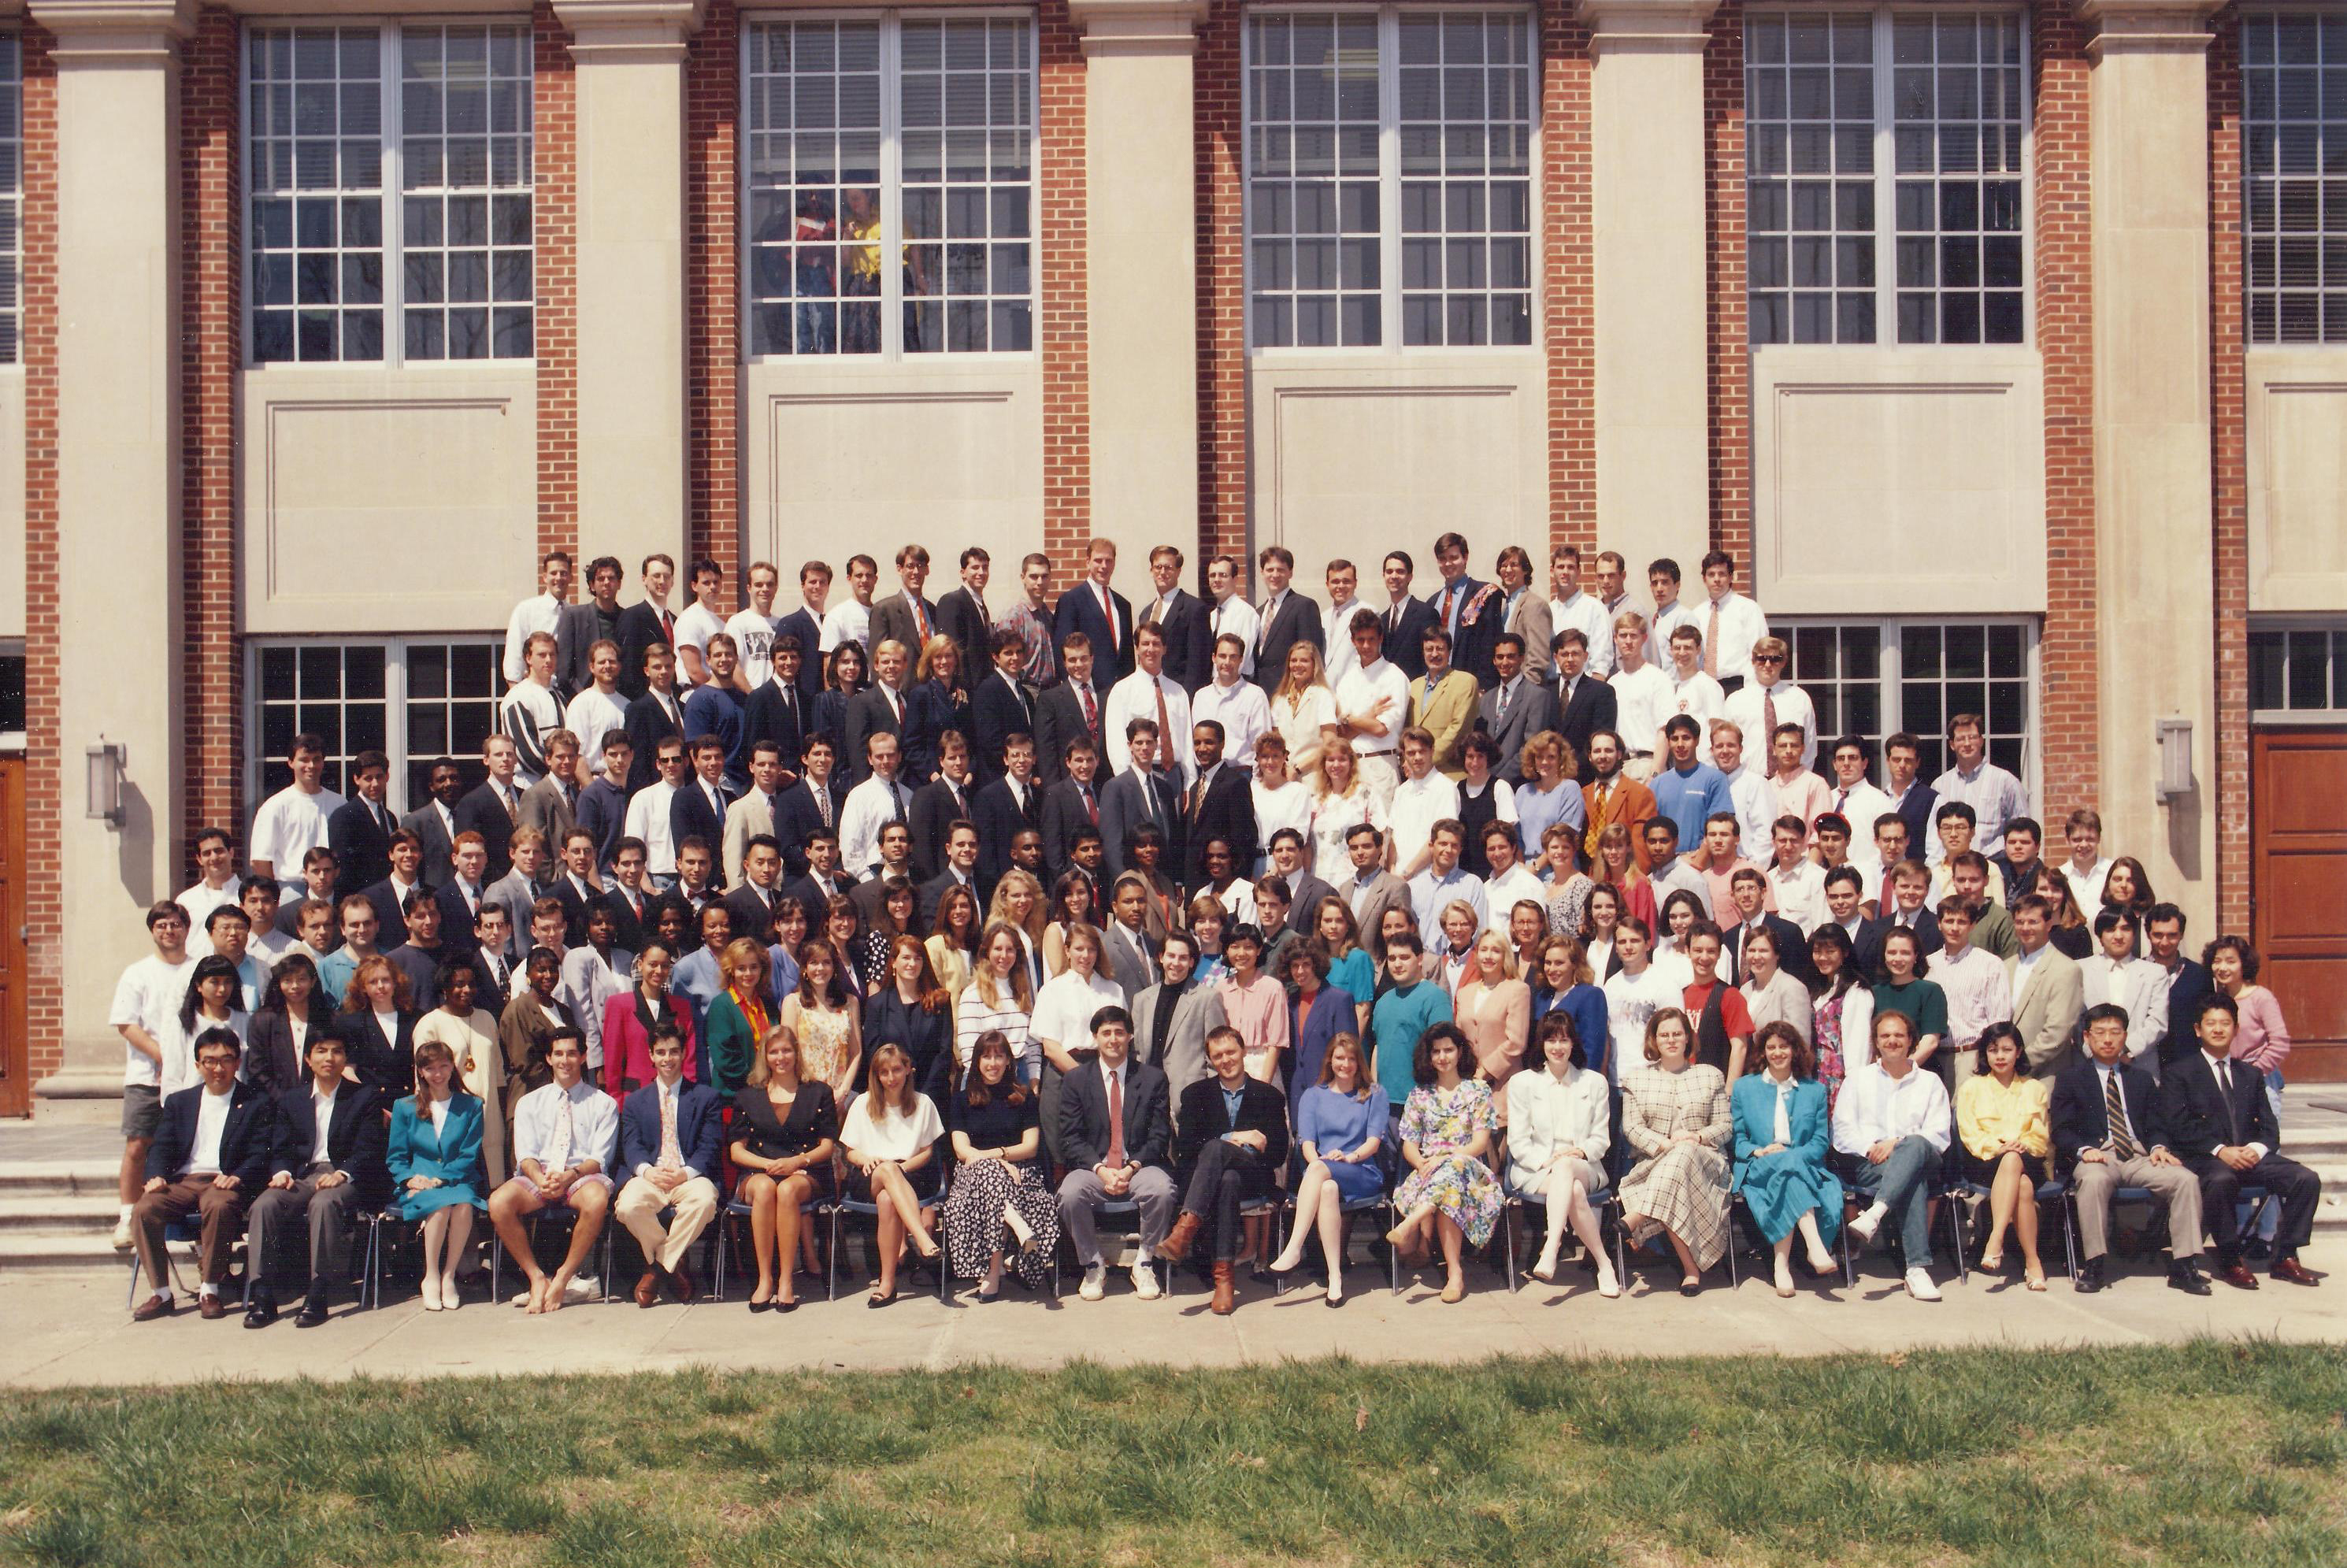 1993 class photo